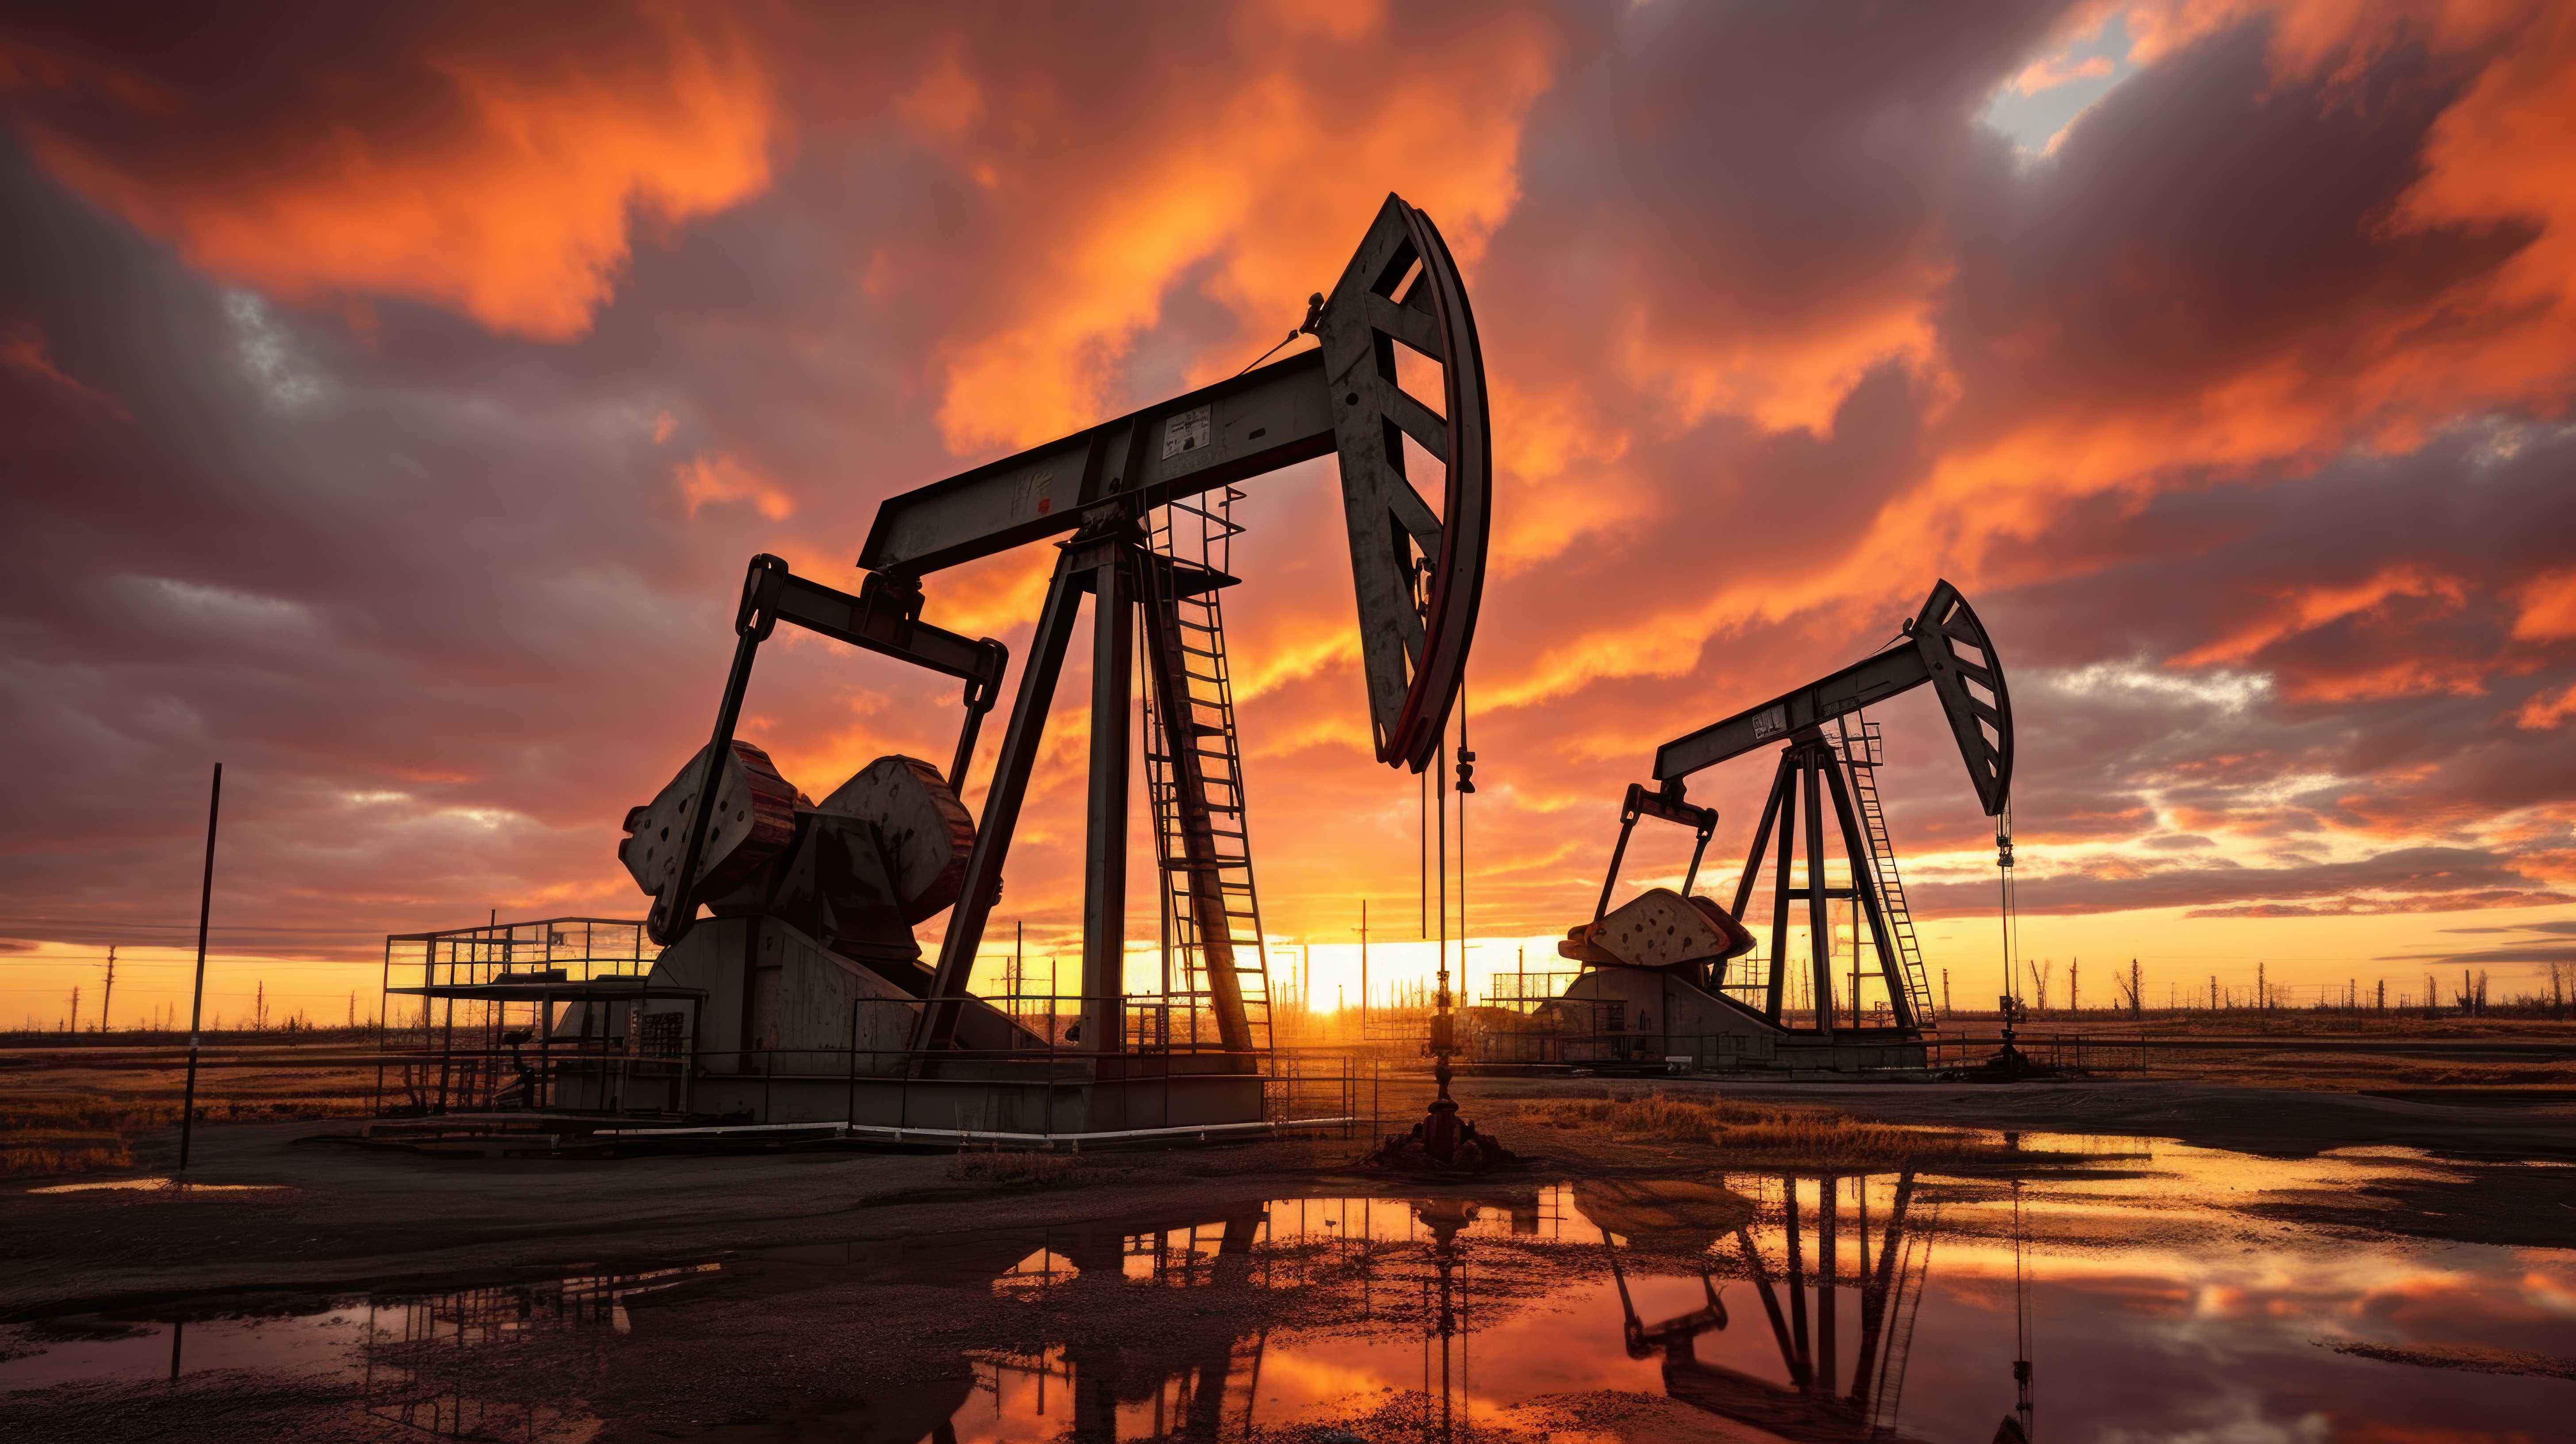 oil-pumps-work-rhythmically-against-backdrop-dusky-sky (1).jpg